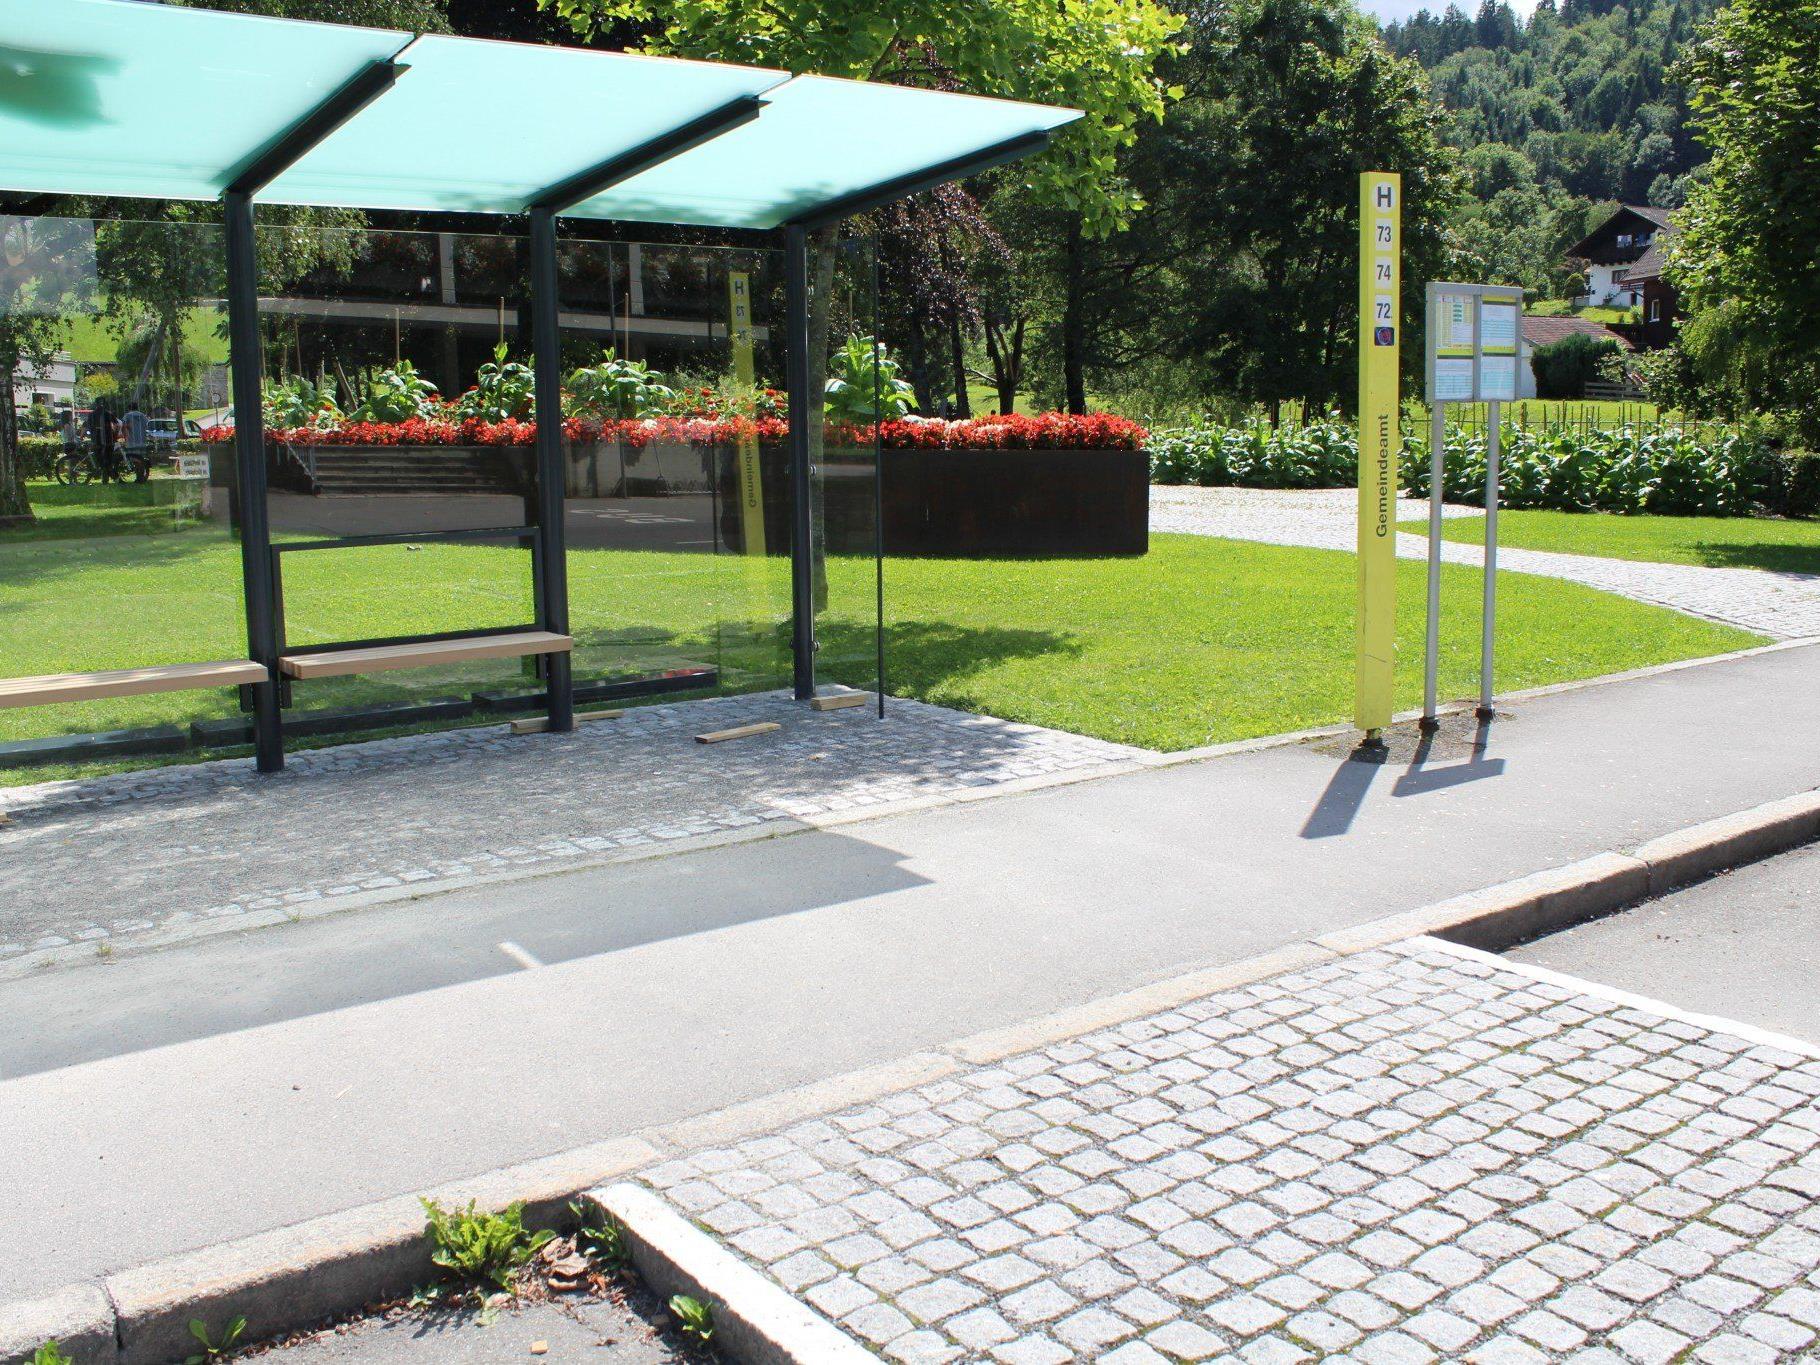 Neues Buswartehäuschen am Gemeindepark